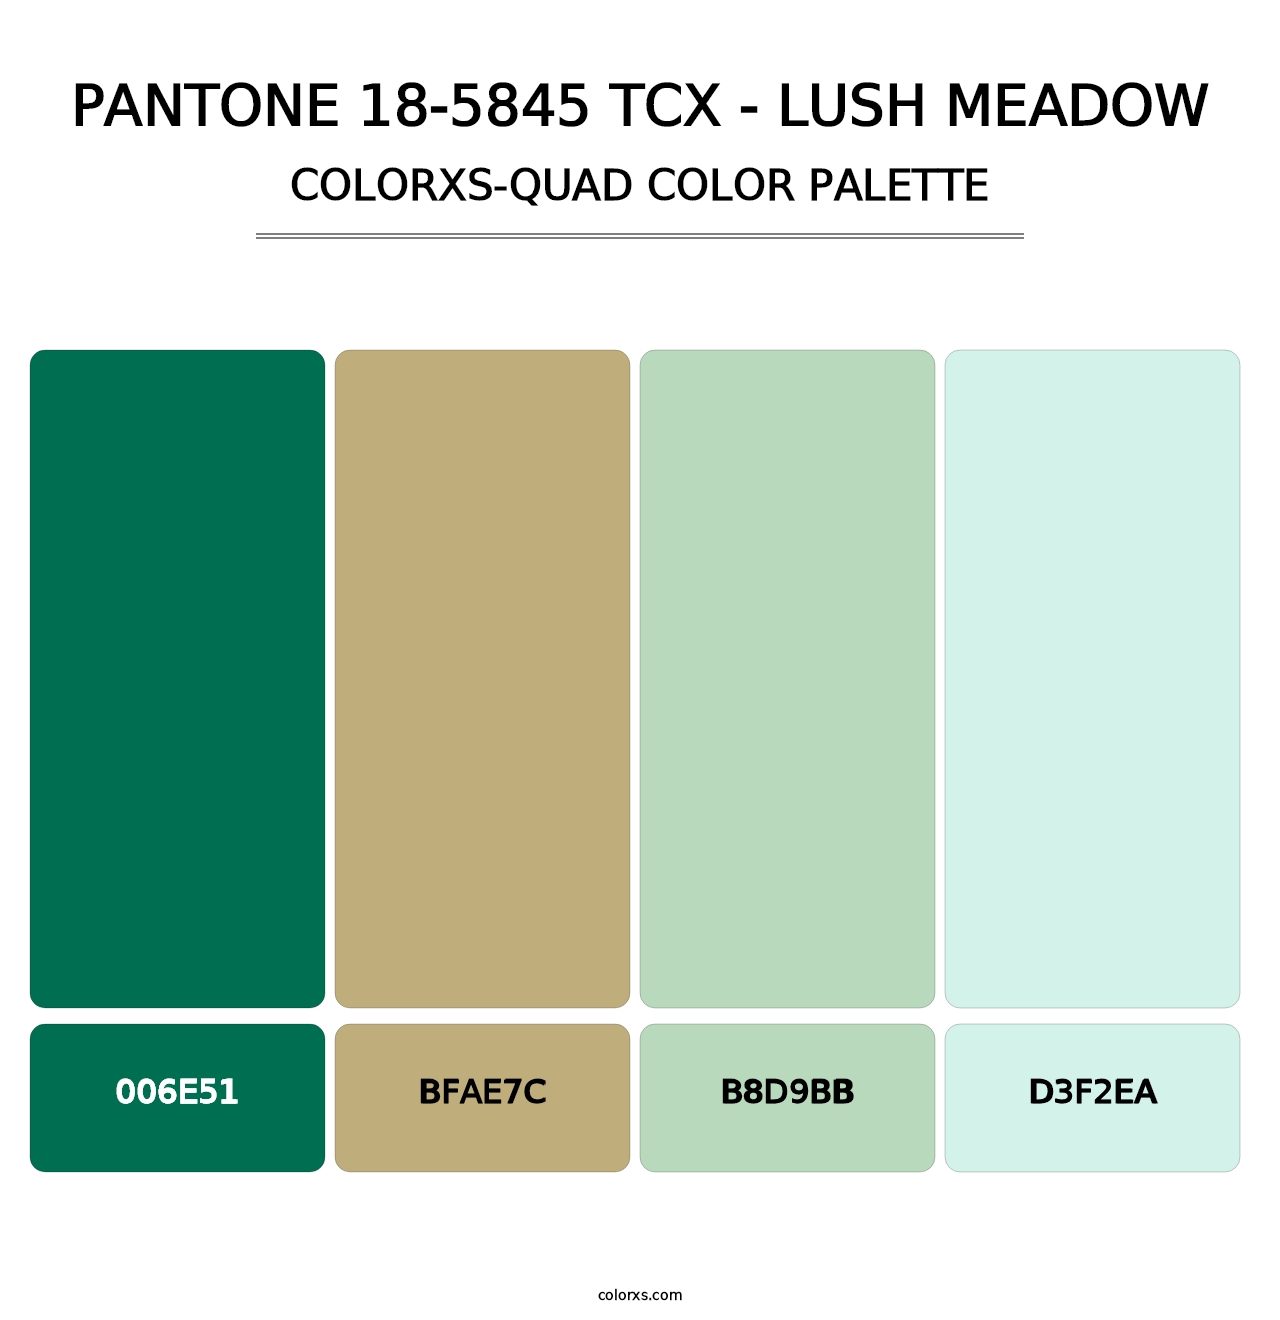 PANTONE 18-5845 TCX - Lush Meadow - Colorxs Quad Palette